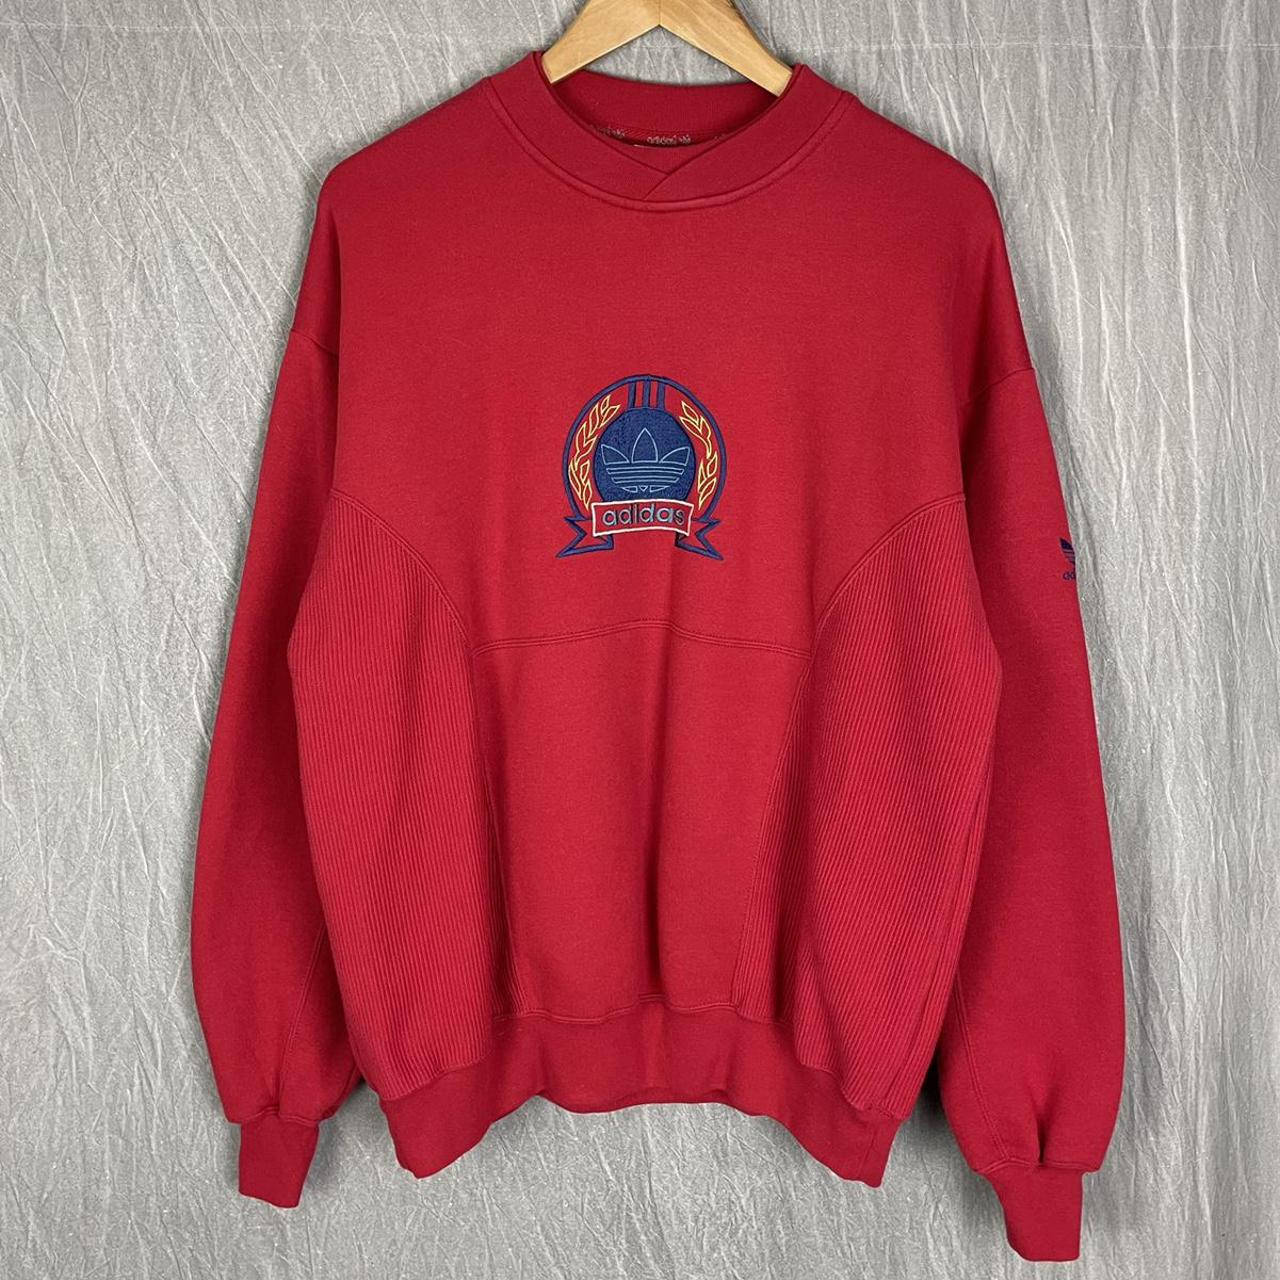 Product Image 1 - Vintage embroidered Adidas sweatshirt 

•FREE